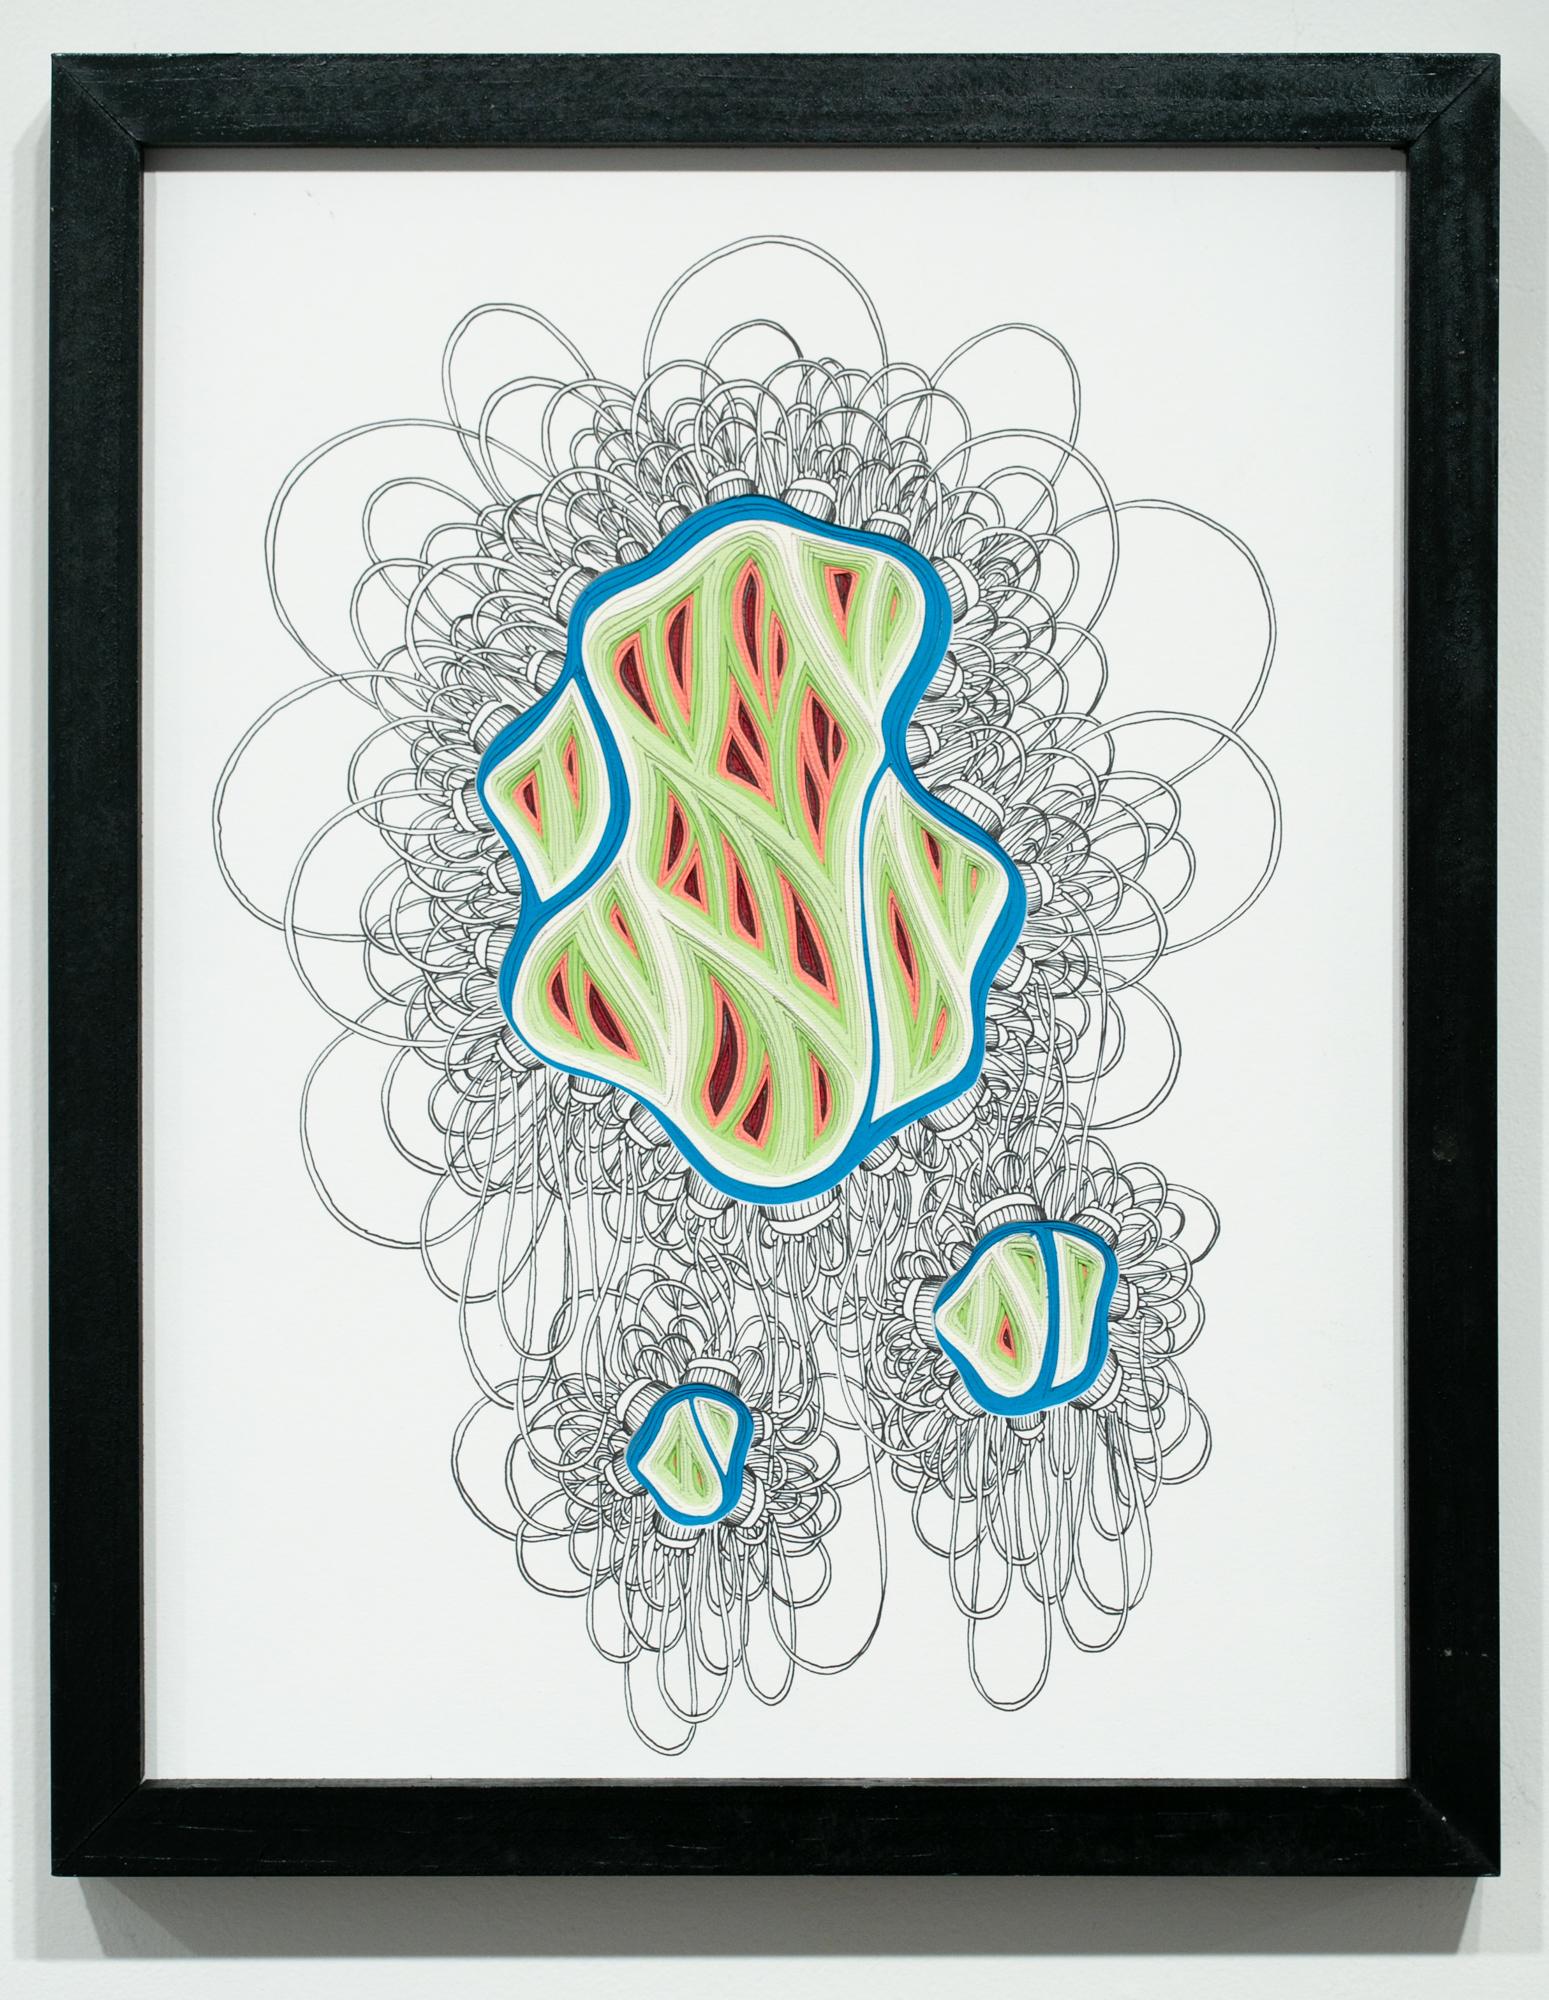 Phlebotomy-Bewegung #16 mit doppelter Schöpfkelle – Art von Charles Clary